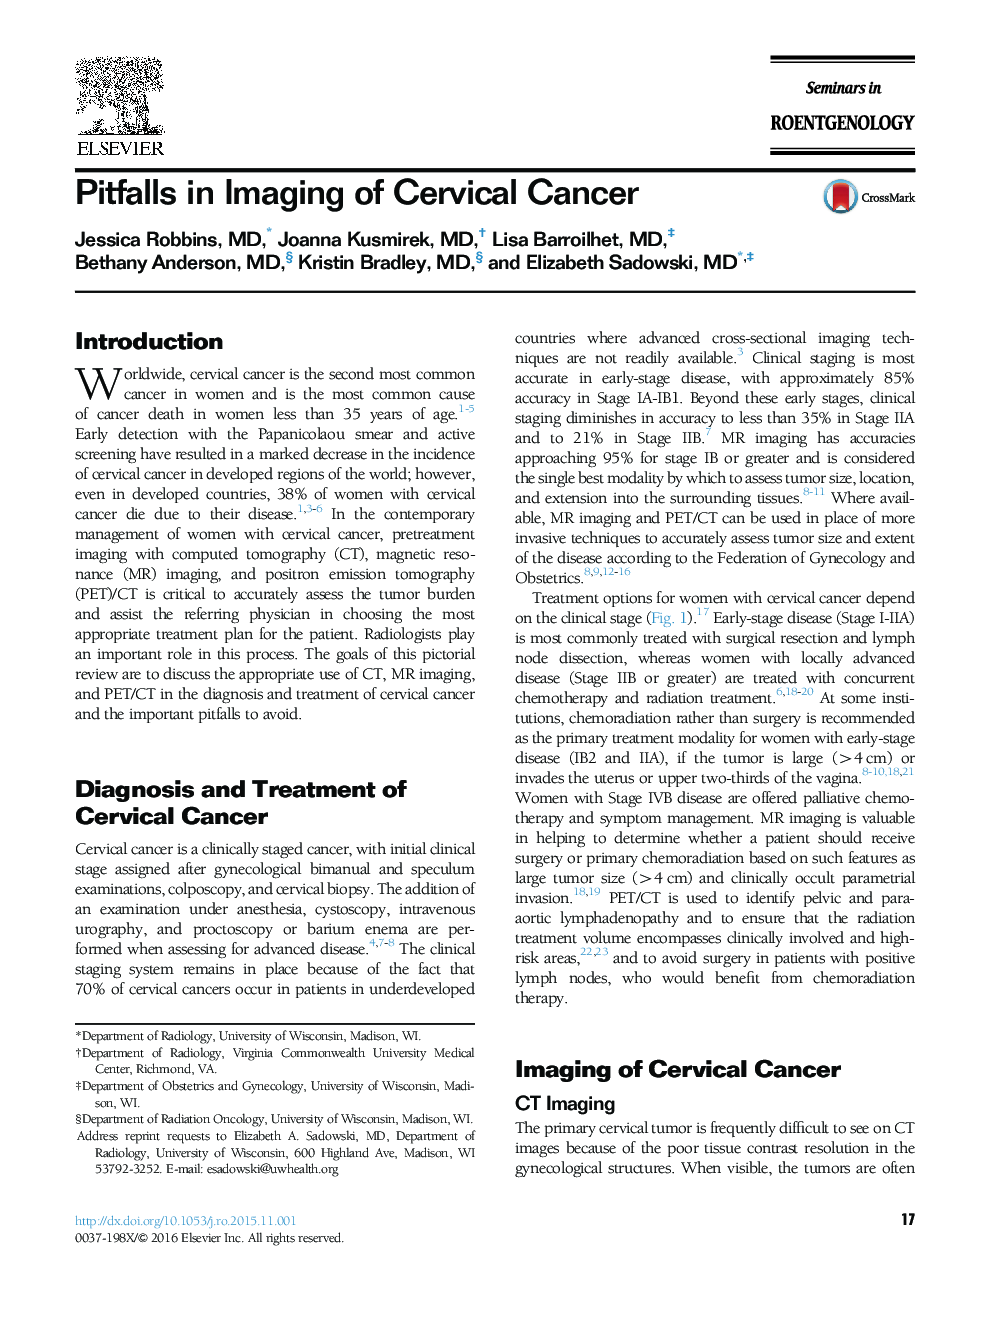 Pitfalls in Imaging of Cervical Cancer